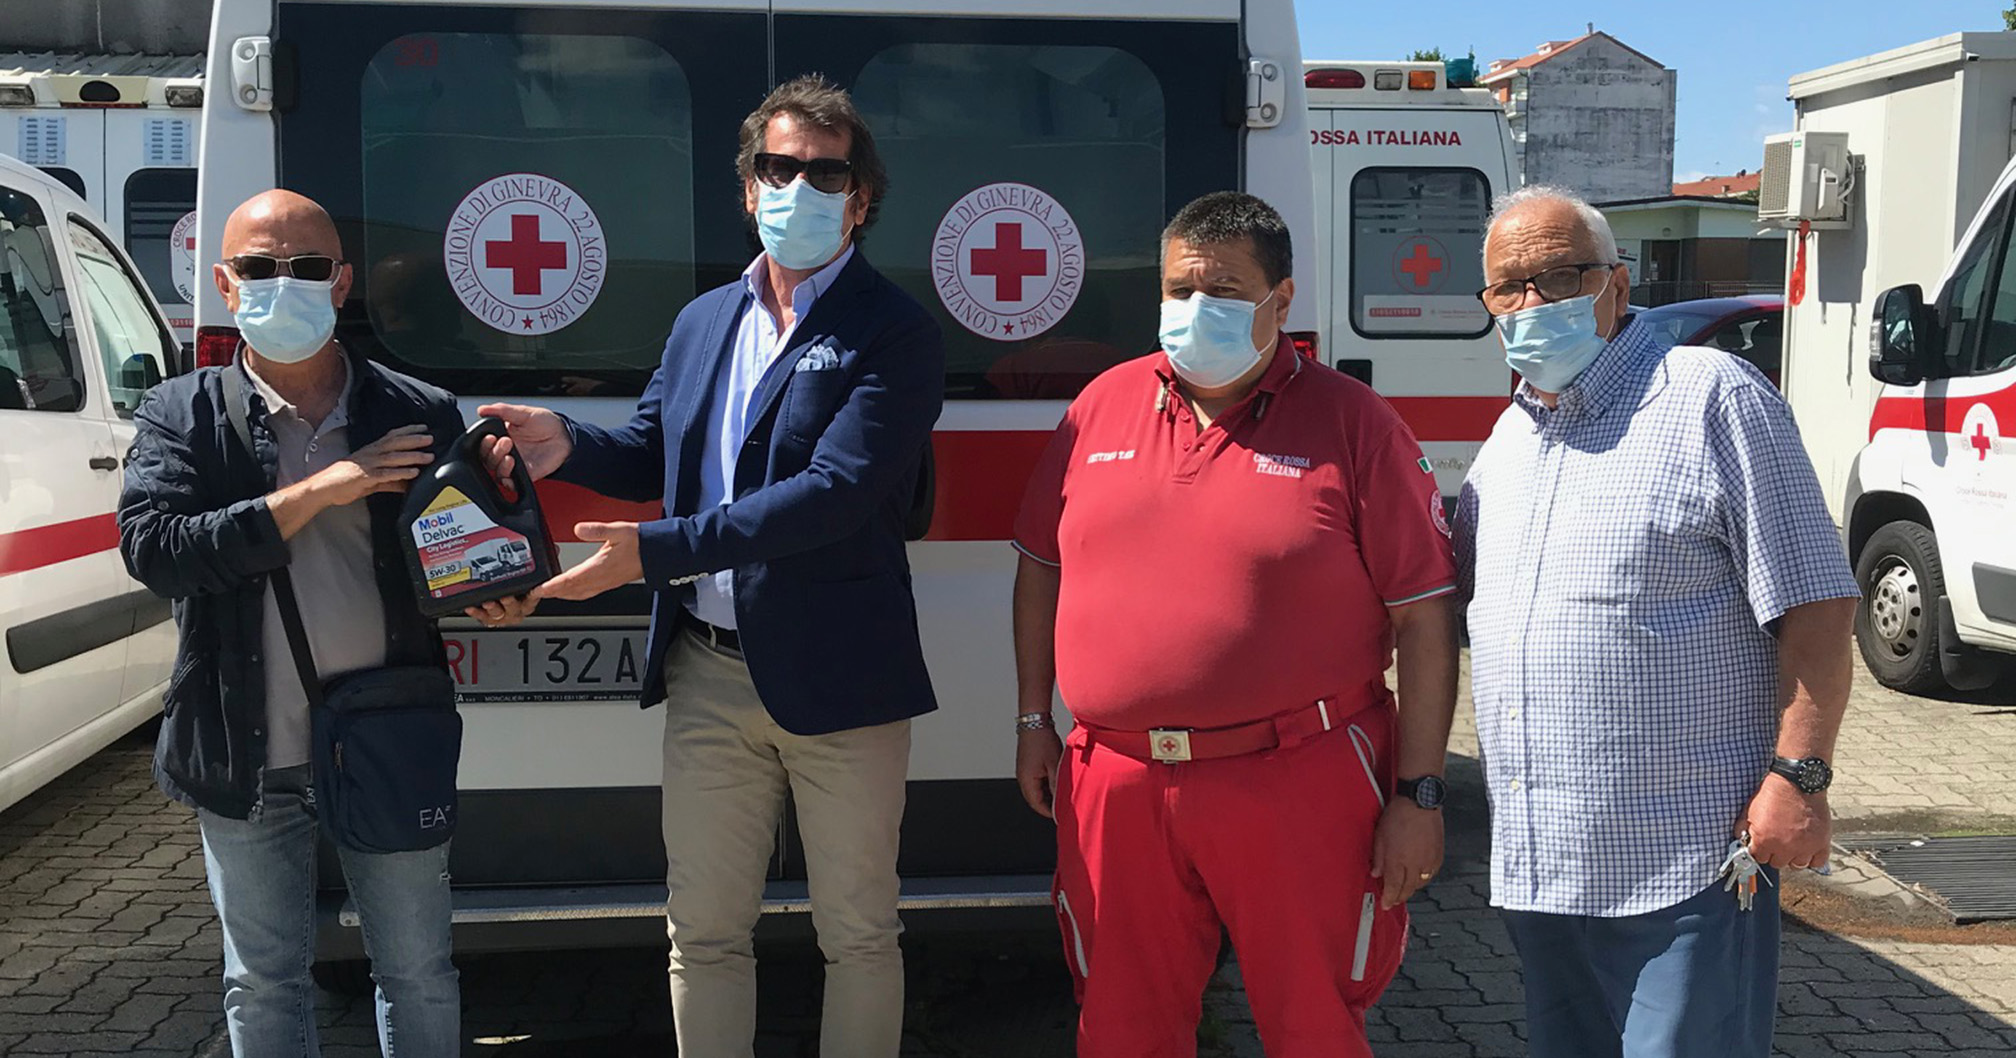 Le consegne di T&B Group,  Authorized MobilTM Distributor, iniziano al Comitato di Settimo Torinese della Croce Rossa Italiana